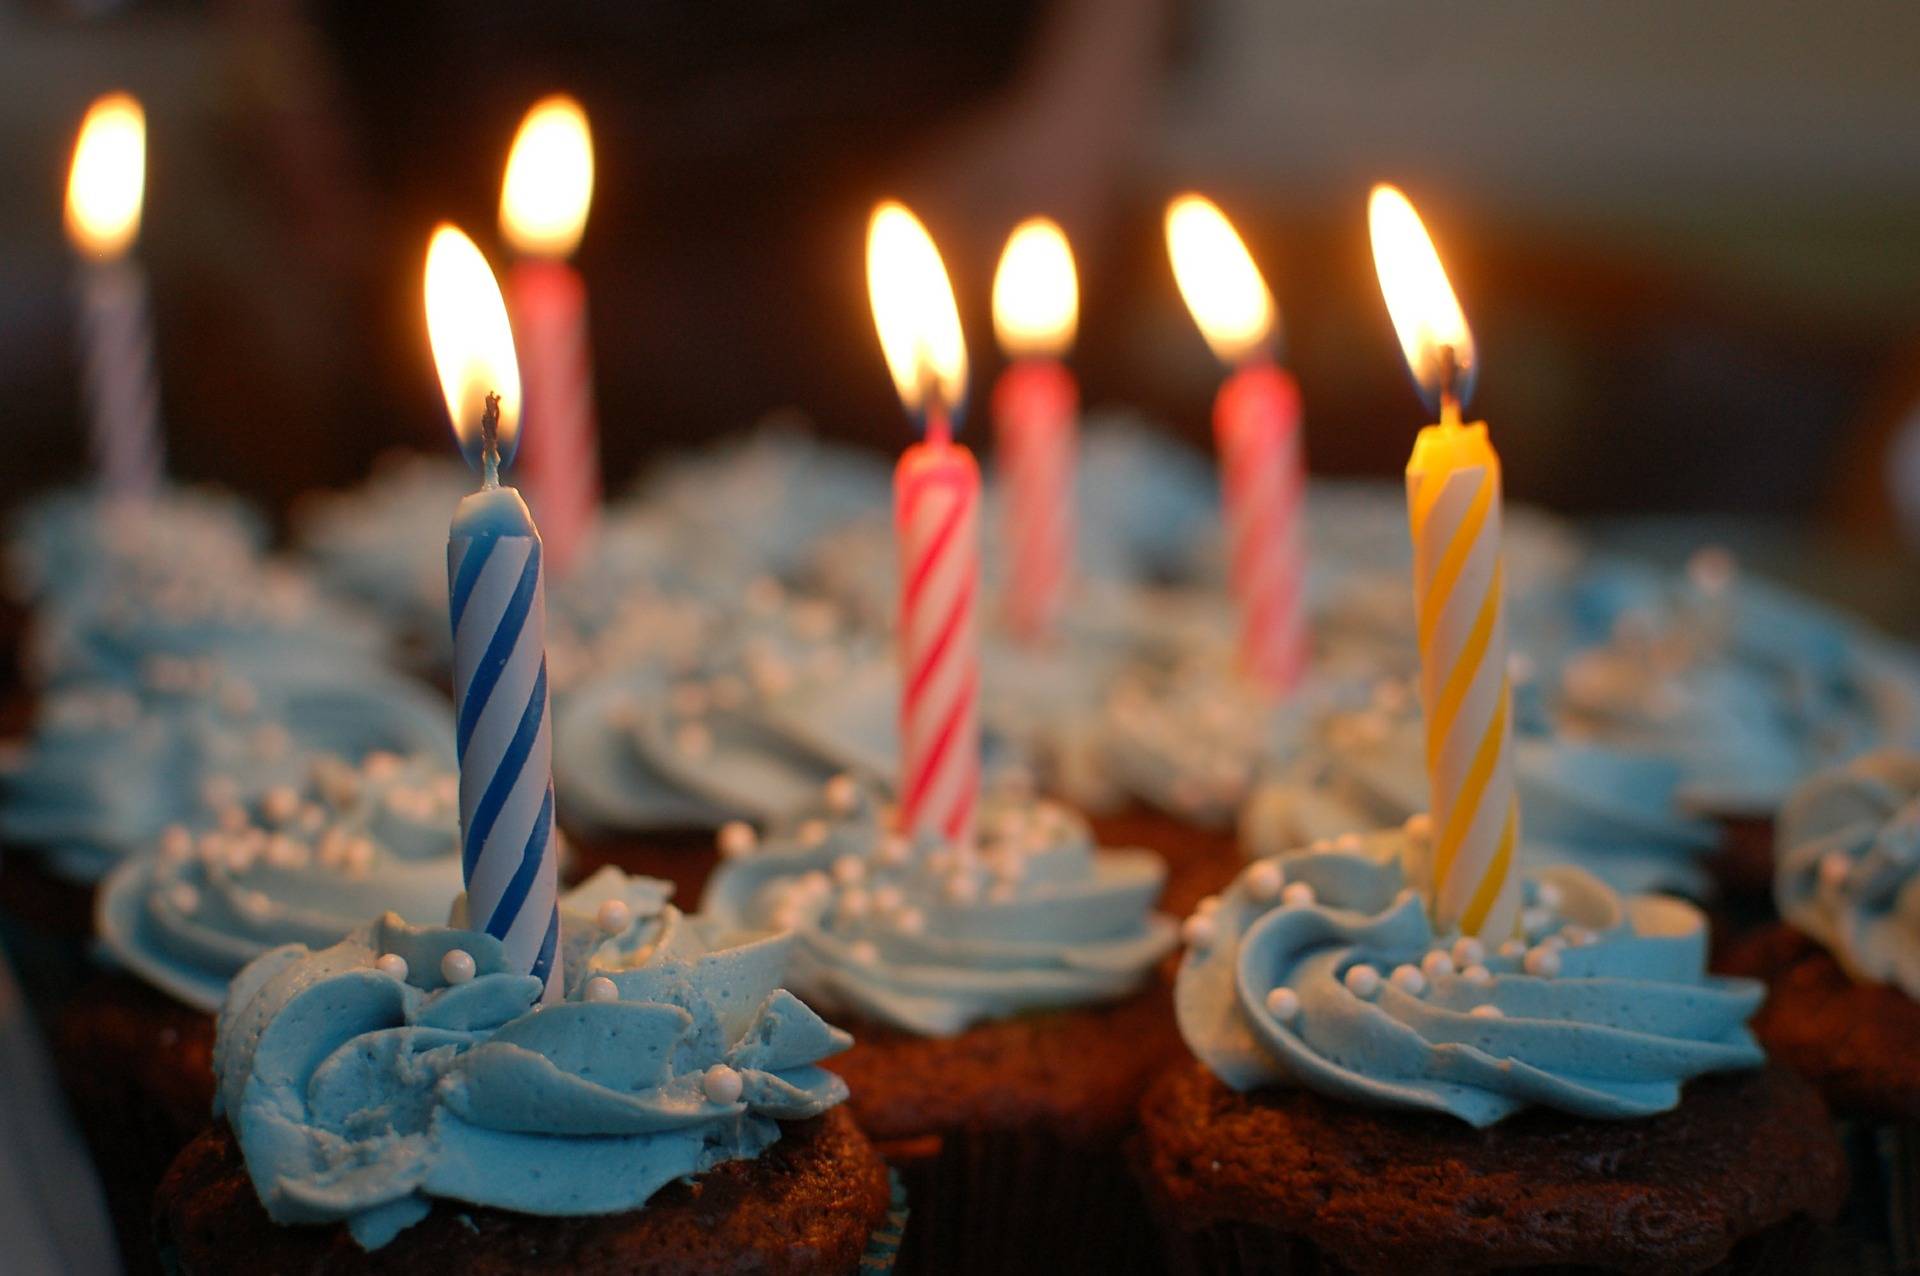 一个男人插六个蜡烛自己过生日是啥意思呀\x3f 27生日蛋糕插几根蜡烛